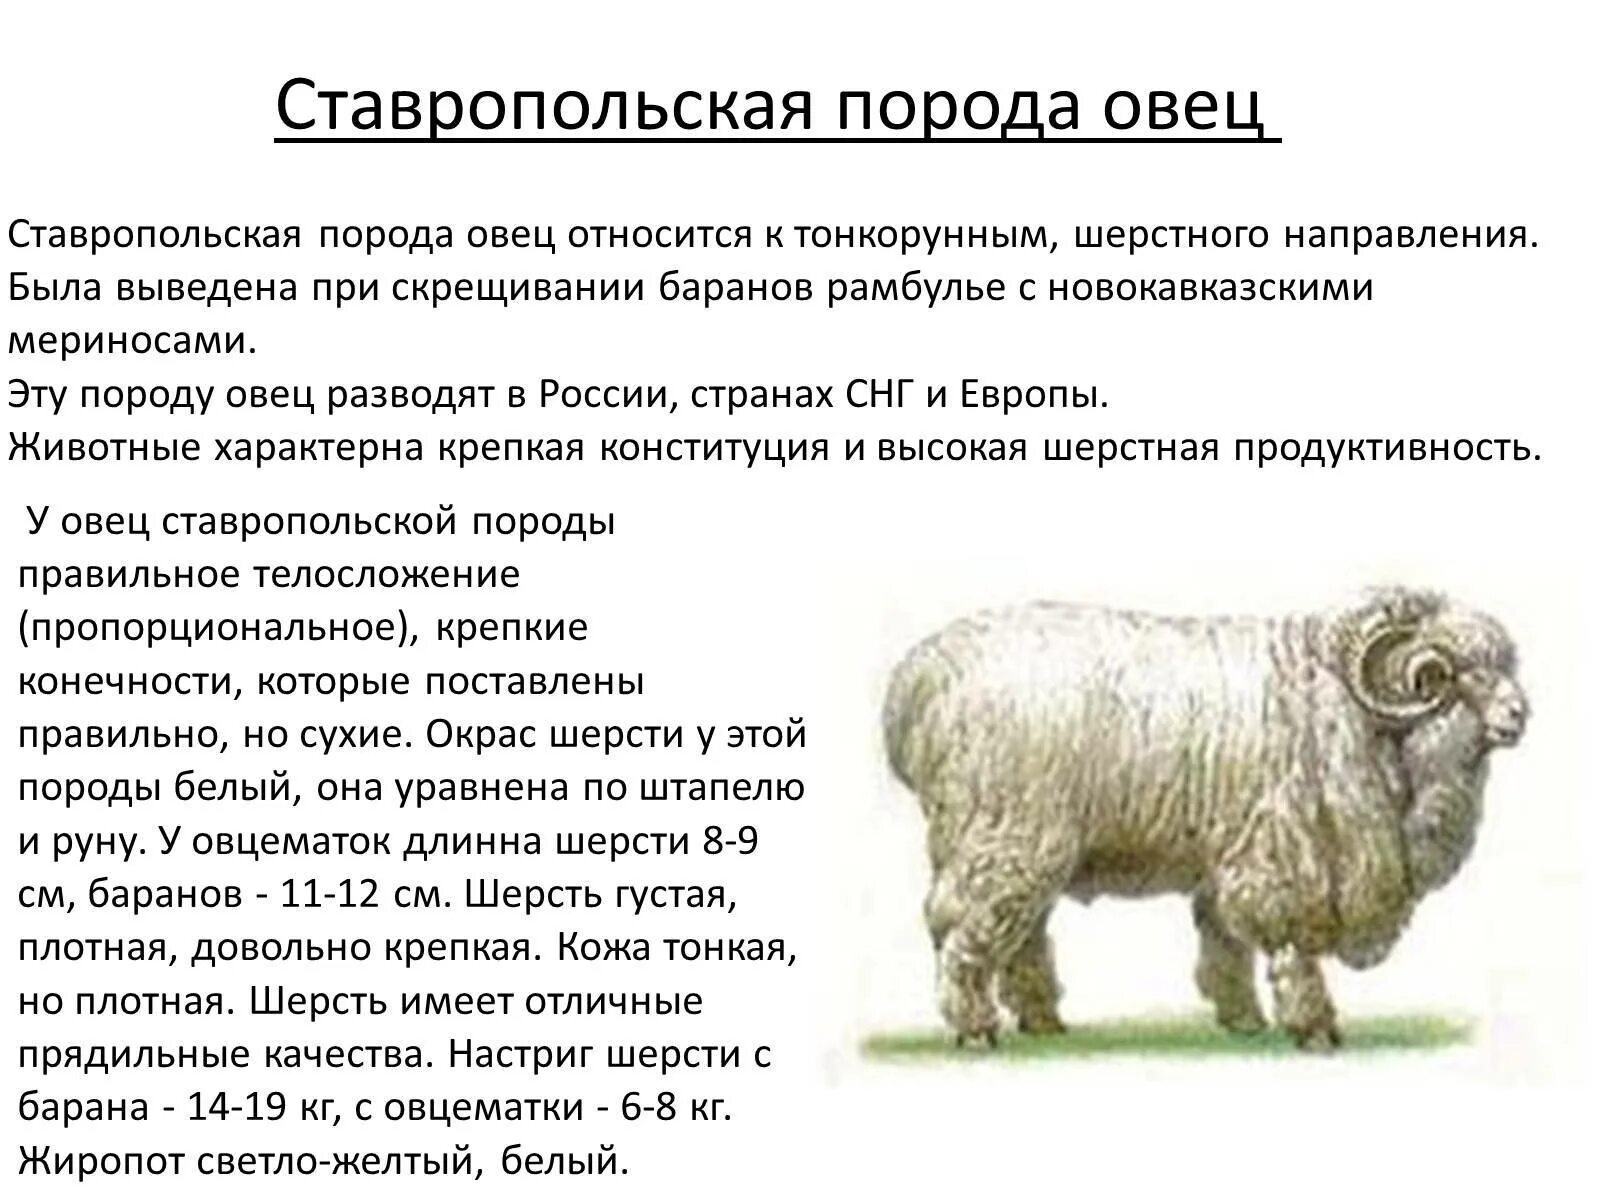 Ставропольский меринос порода овец. Порода мериносовых Ставропольская овец. Ставропольская тонкорунная порода овец. Ставропольская тонкорунная овца. Сколько вес барана